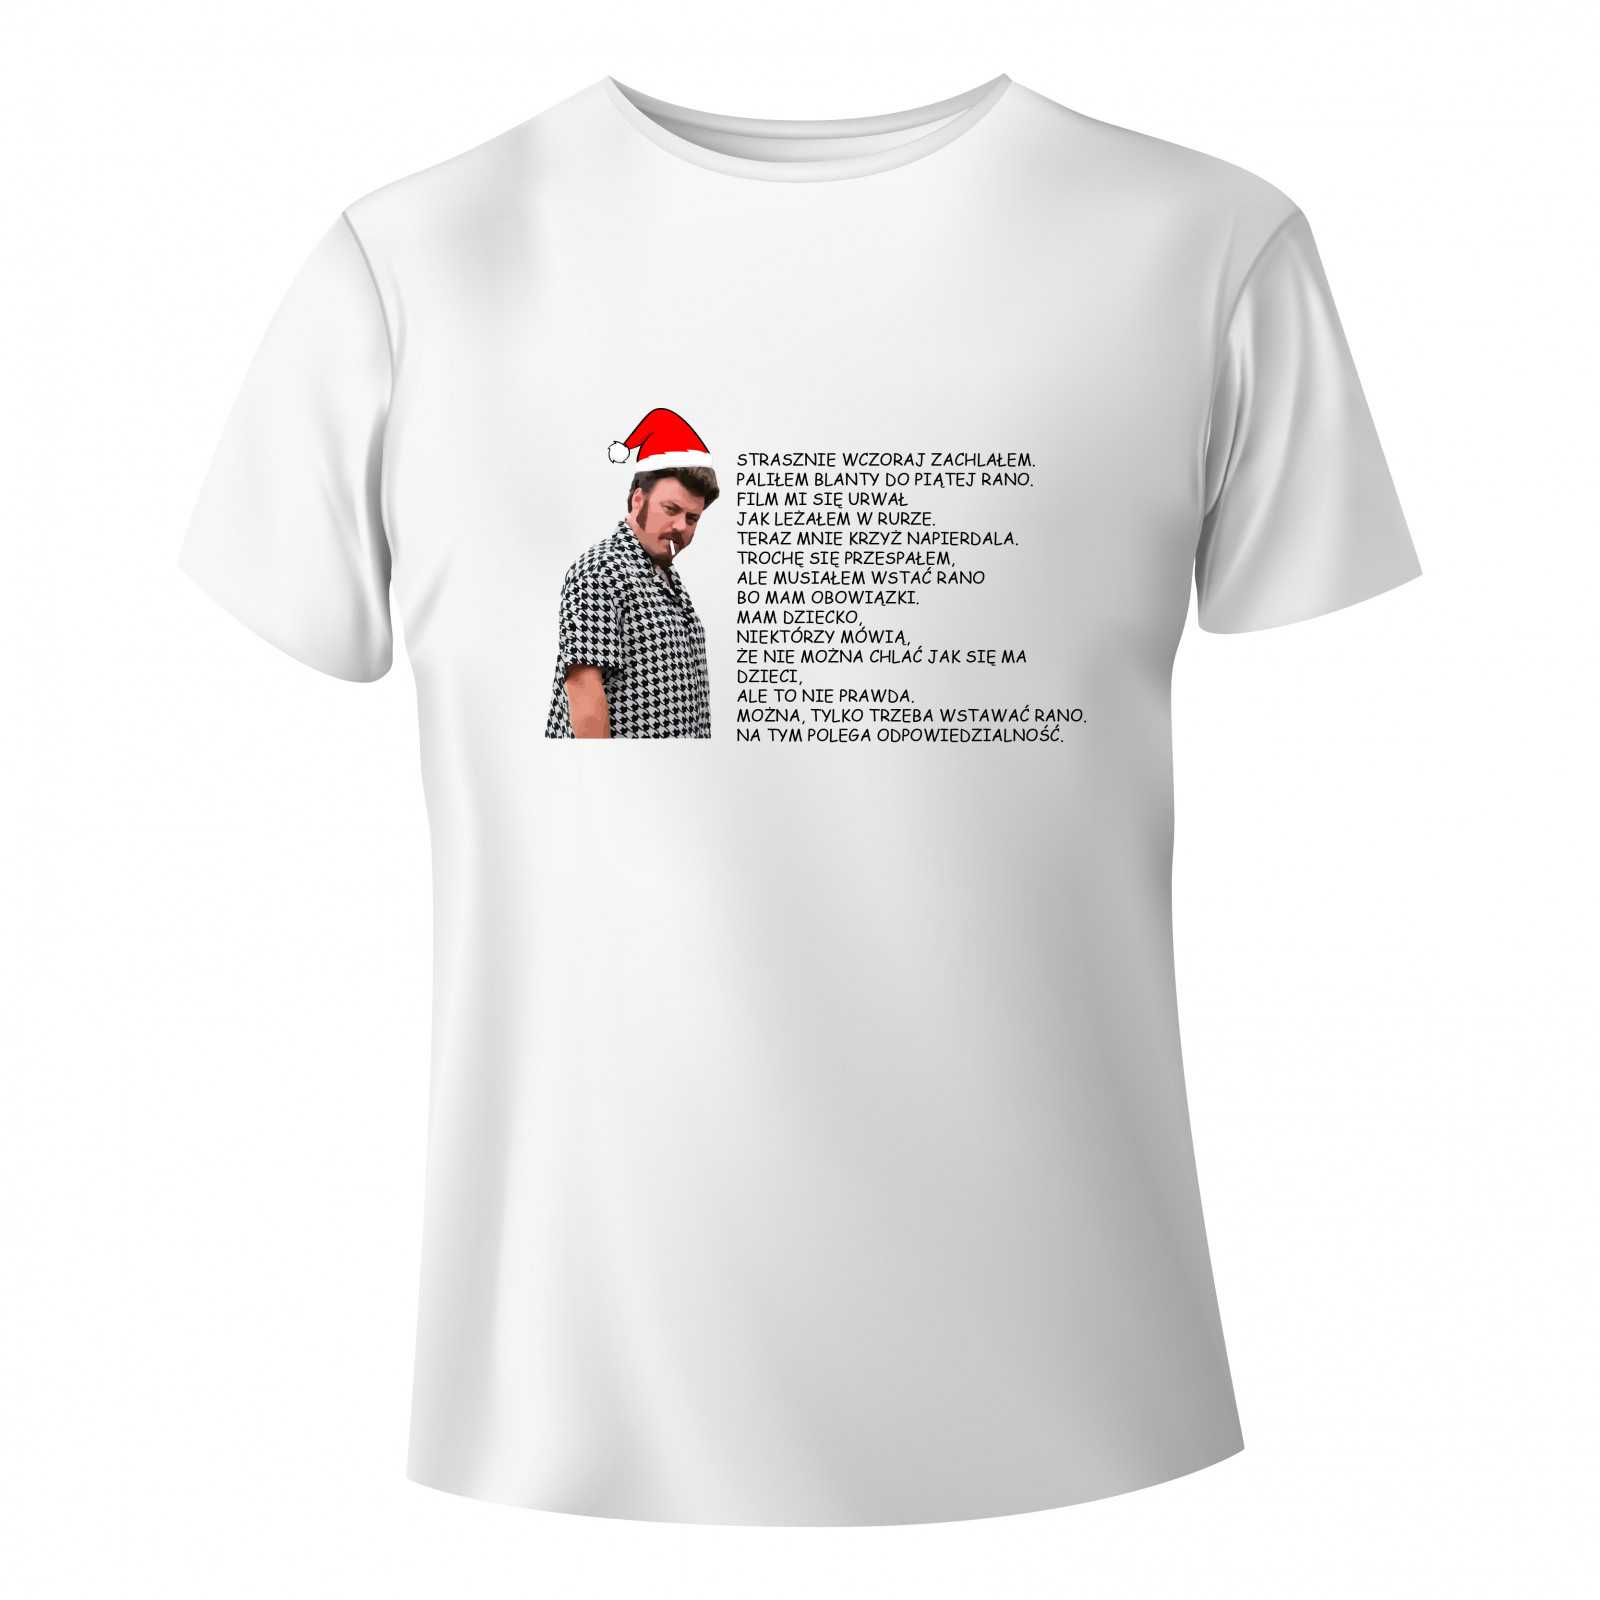 Koszulka Świąteczna z grafiką chłopaki z baraków (Ricky, odpowiedzi...